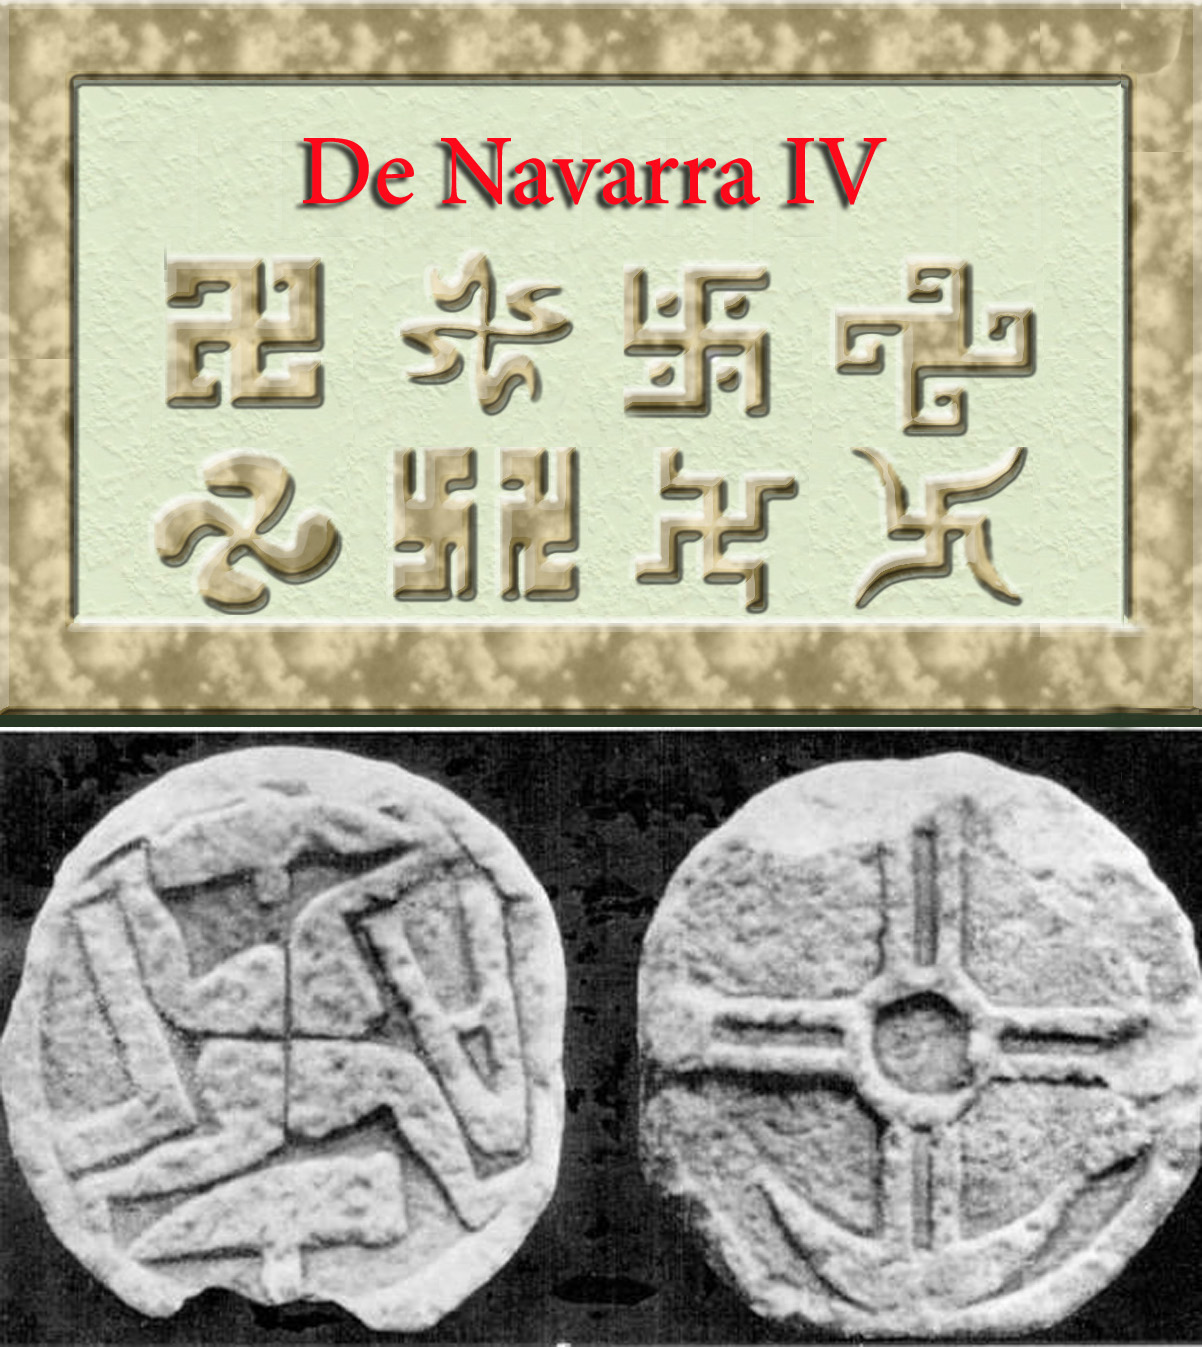 De Navarra IV- Simbología: Lauburus y otras especies